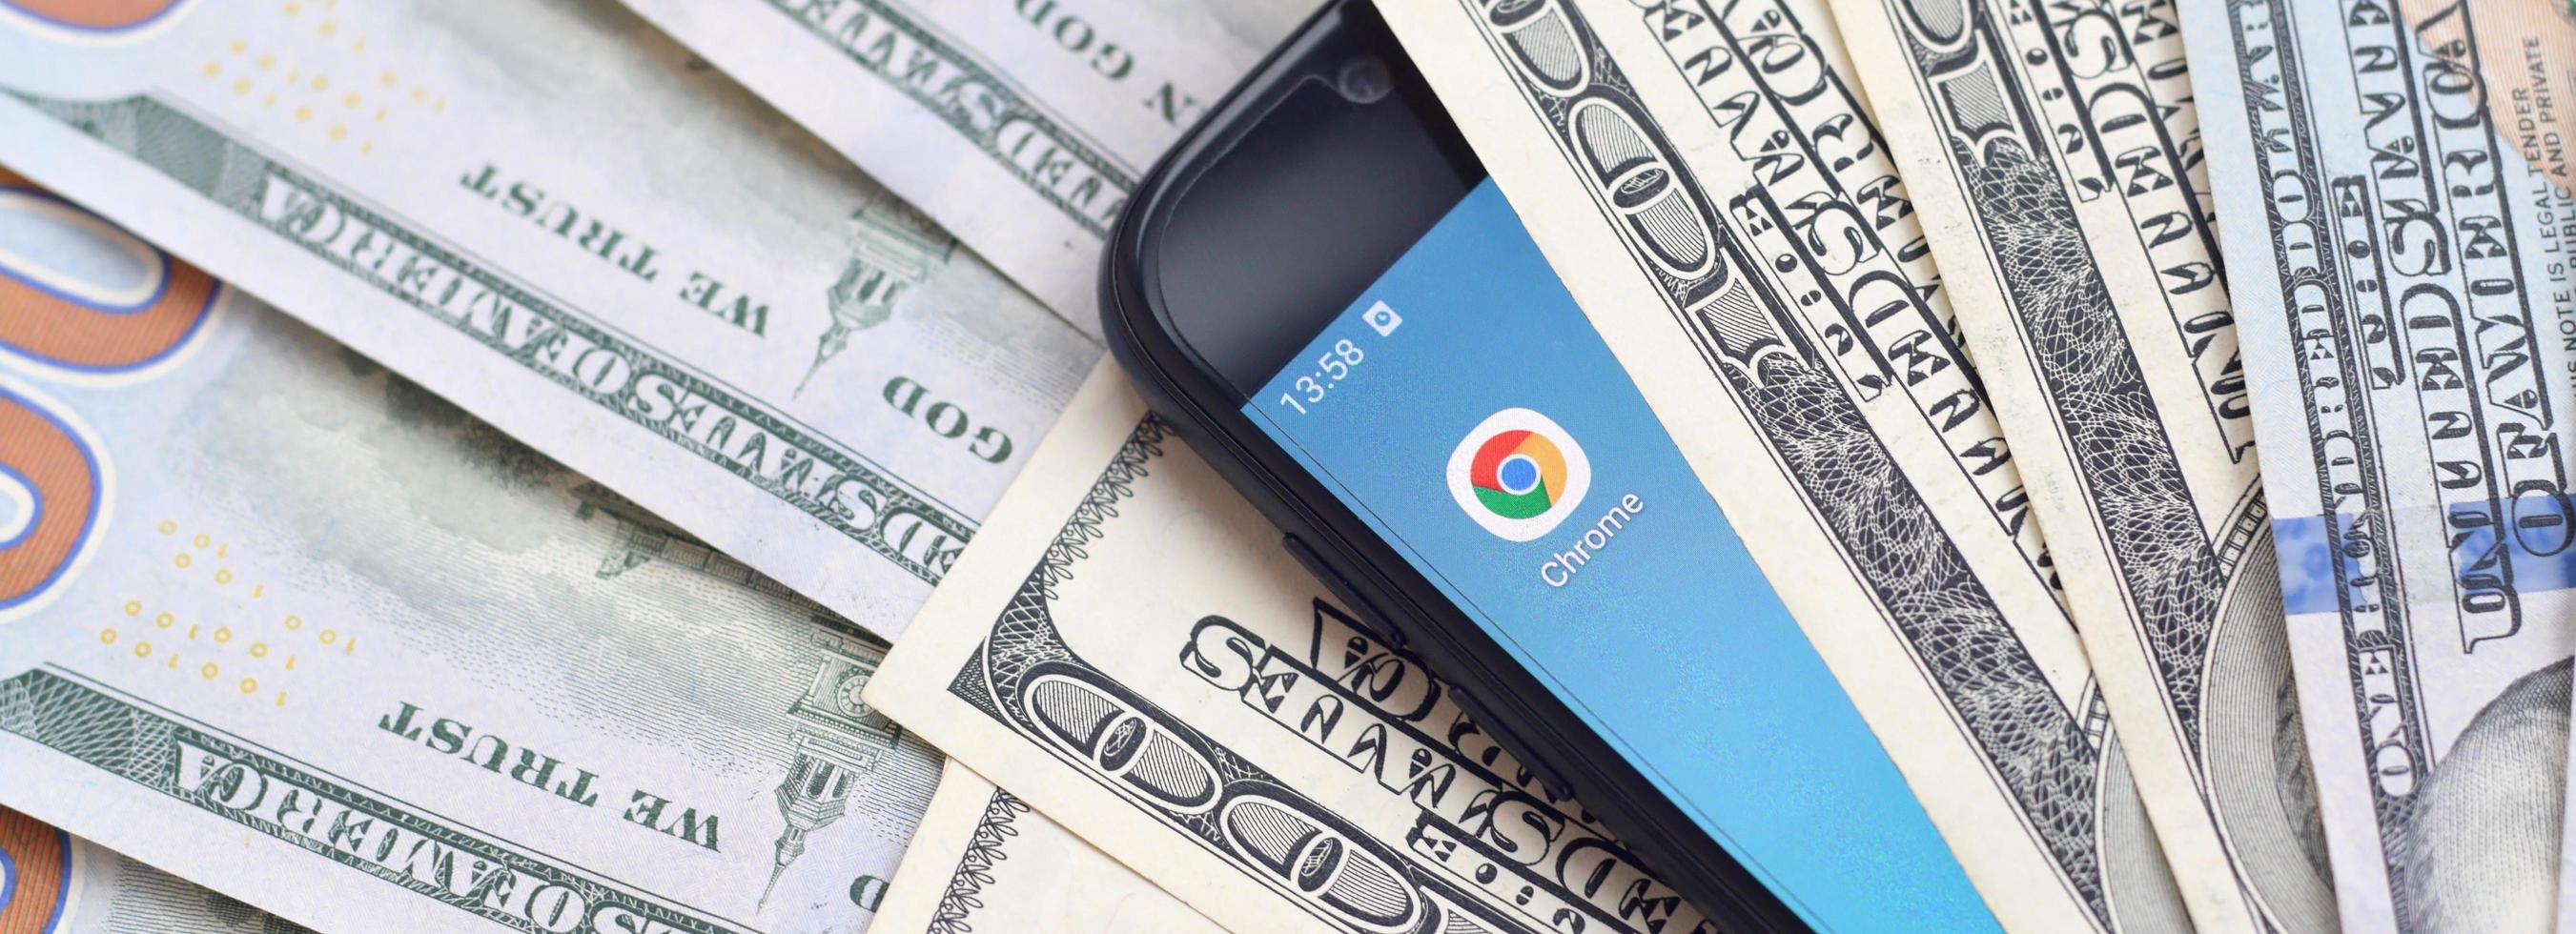 smartphone schermo con Google cromo App e lotto di centinaio dollaro fatture. attività commerciale e sociale networking concetto foto